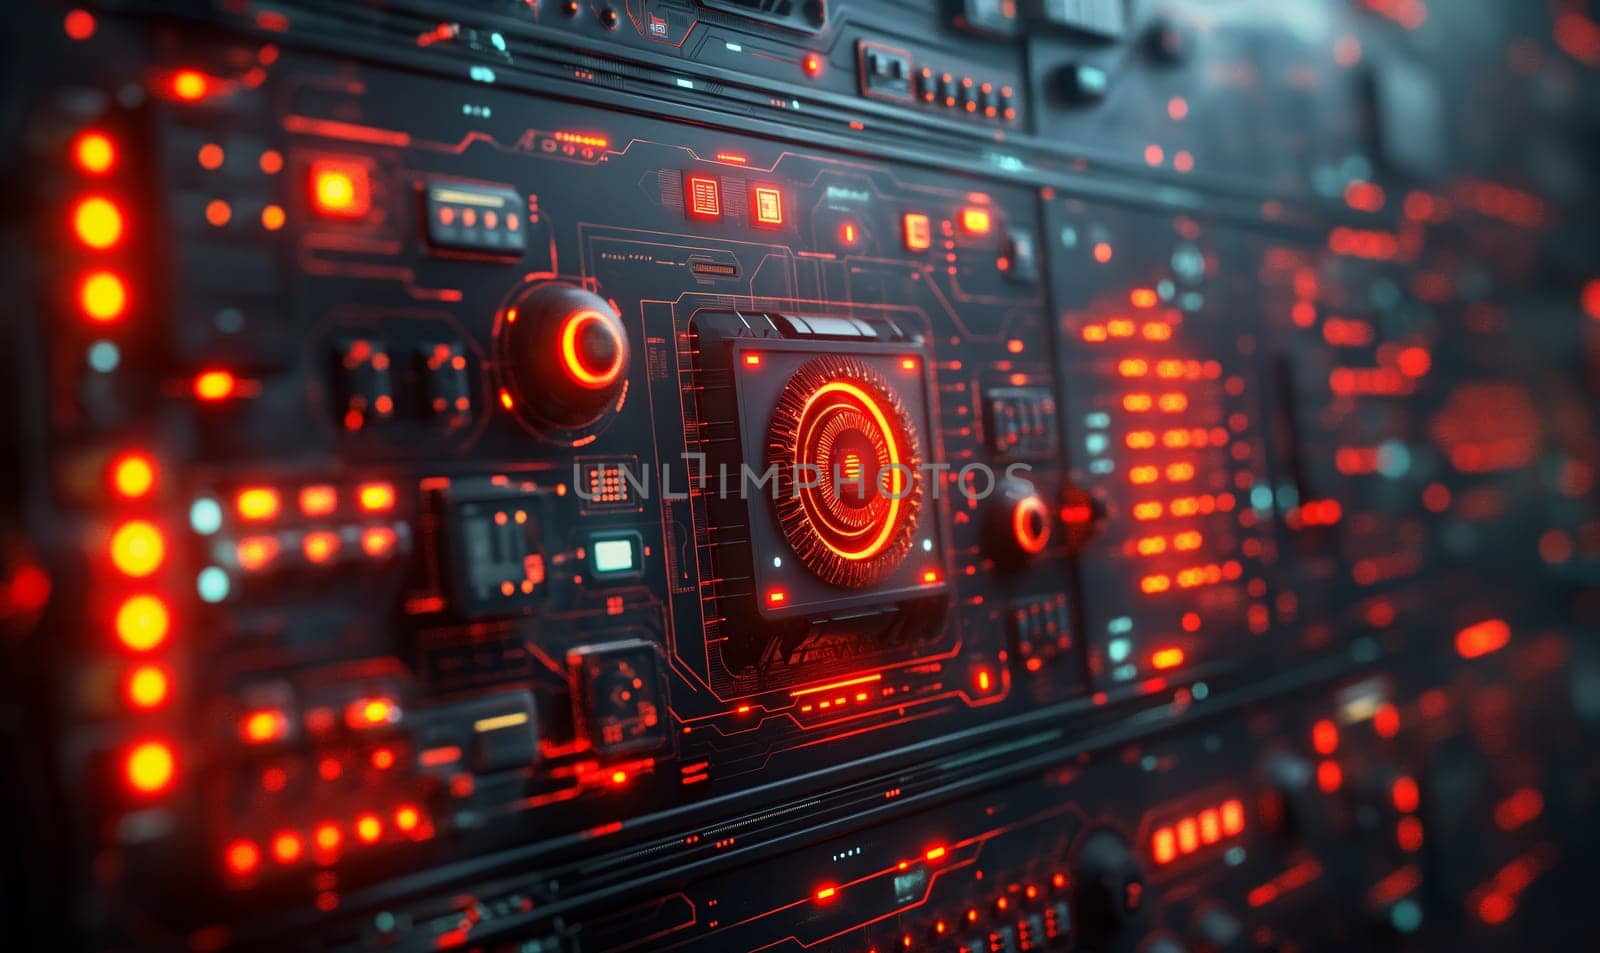 Futuristic Computer With Orange Lights. by Fischeron